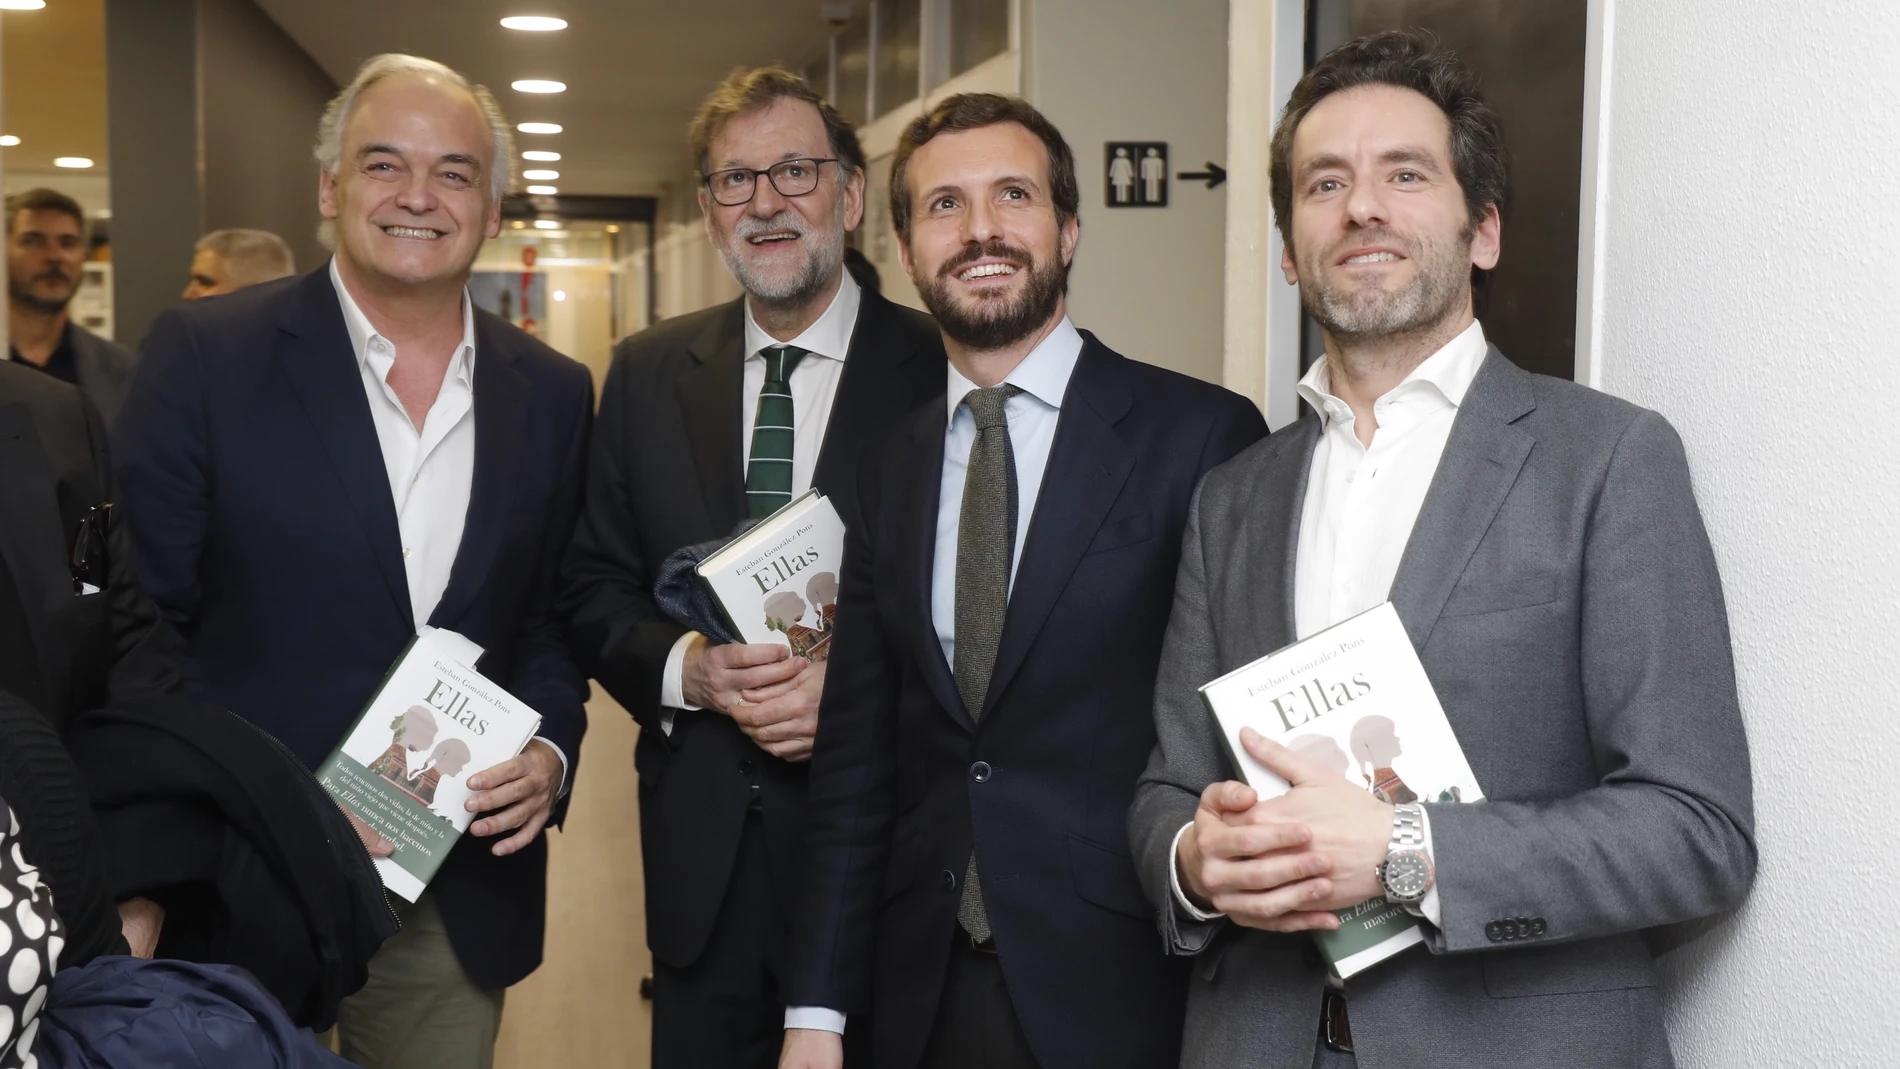 Presentación del libro de González Pons, "Ellas", con la presencia de Mariano Rajoy, Pablo Casado y Borja Sémper @ Jesus G. Feria.13-02-2020.